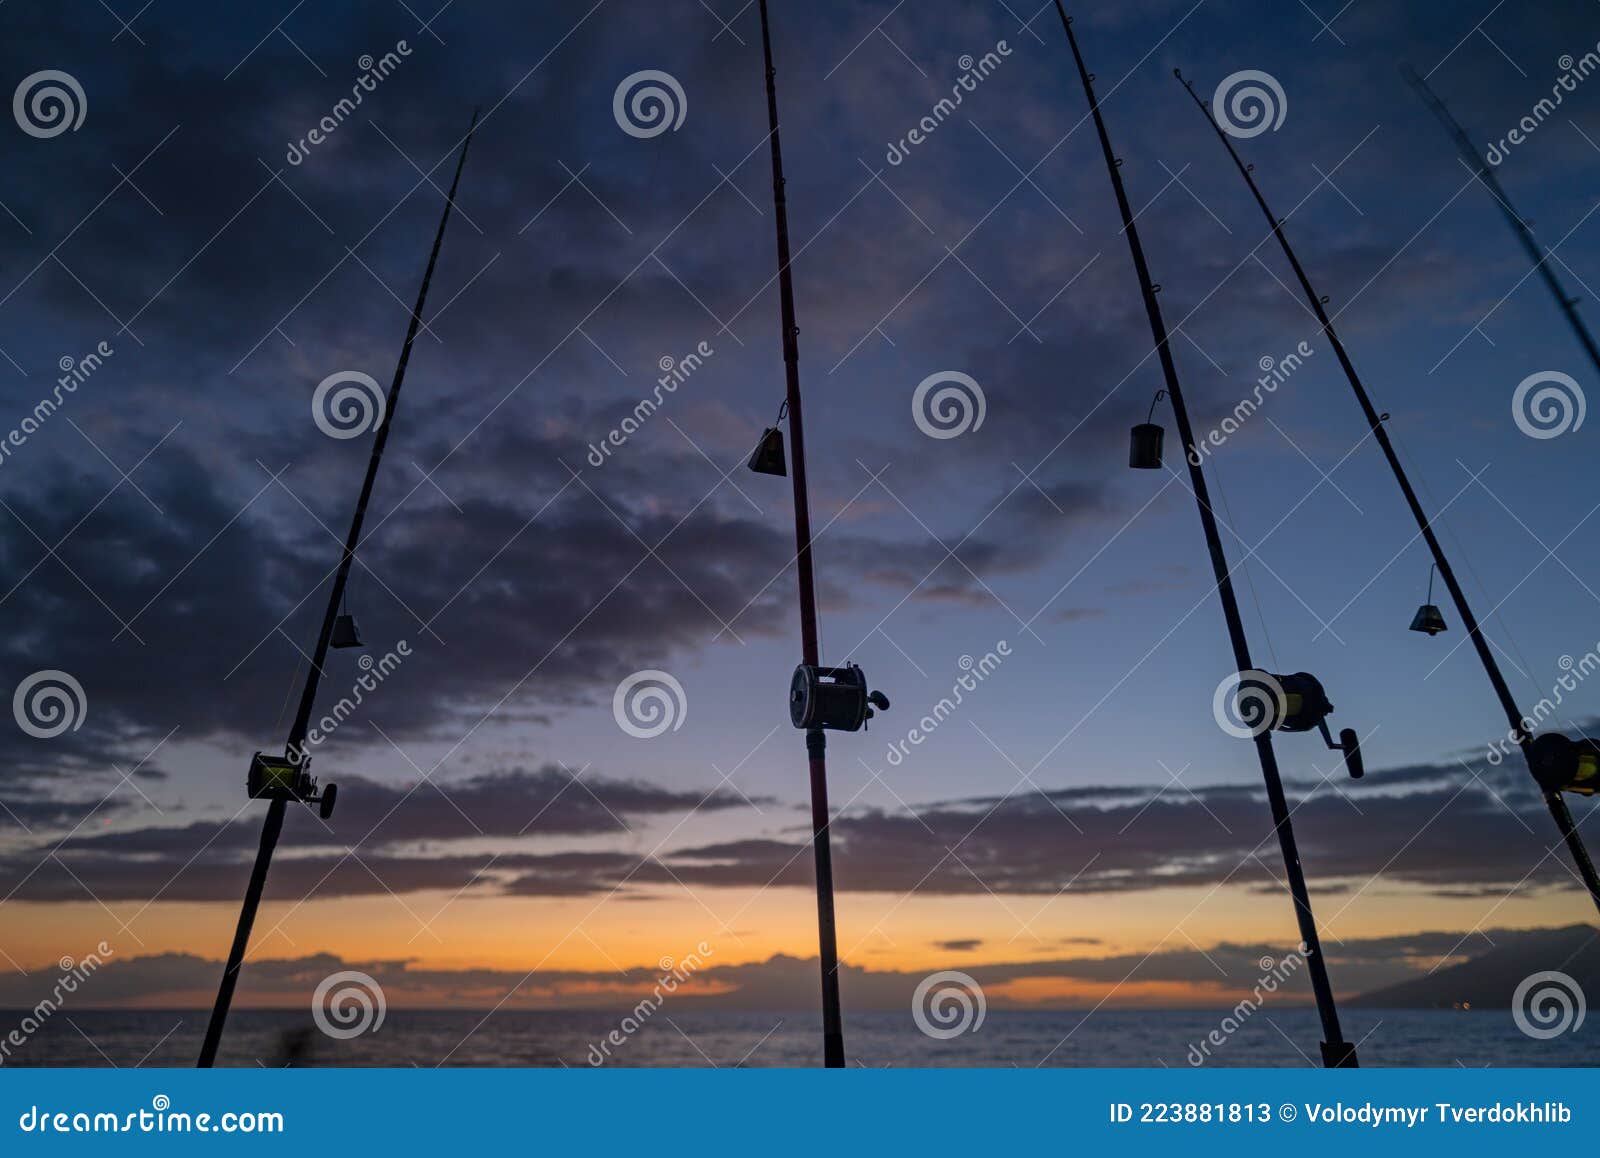 https://thumbs.dreamstime.com/z/fishing-trolling-rod-holder-big-game-reels-rods-pattern-sea-ocean-223881813.jpg